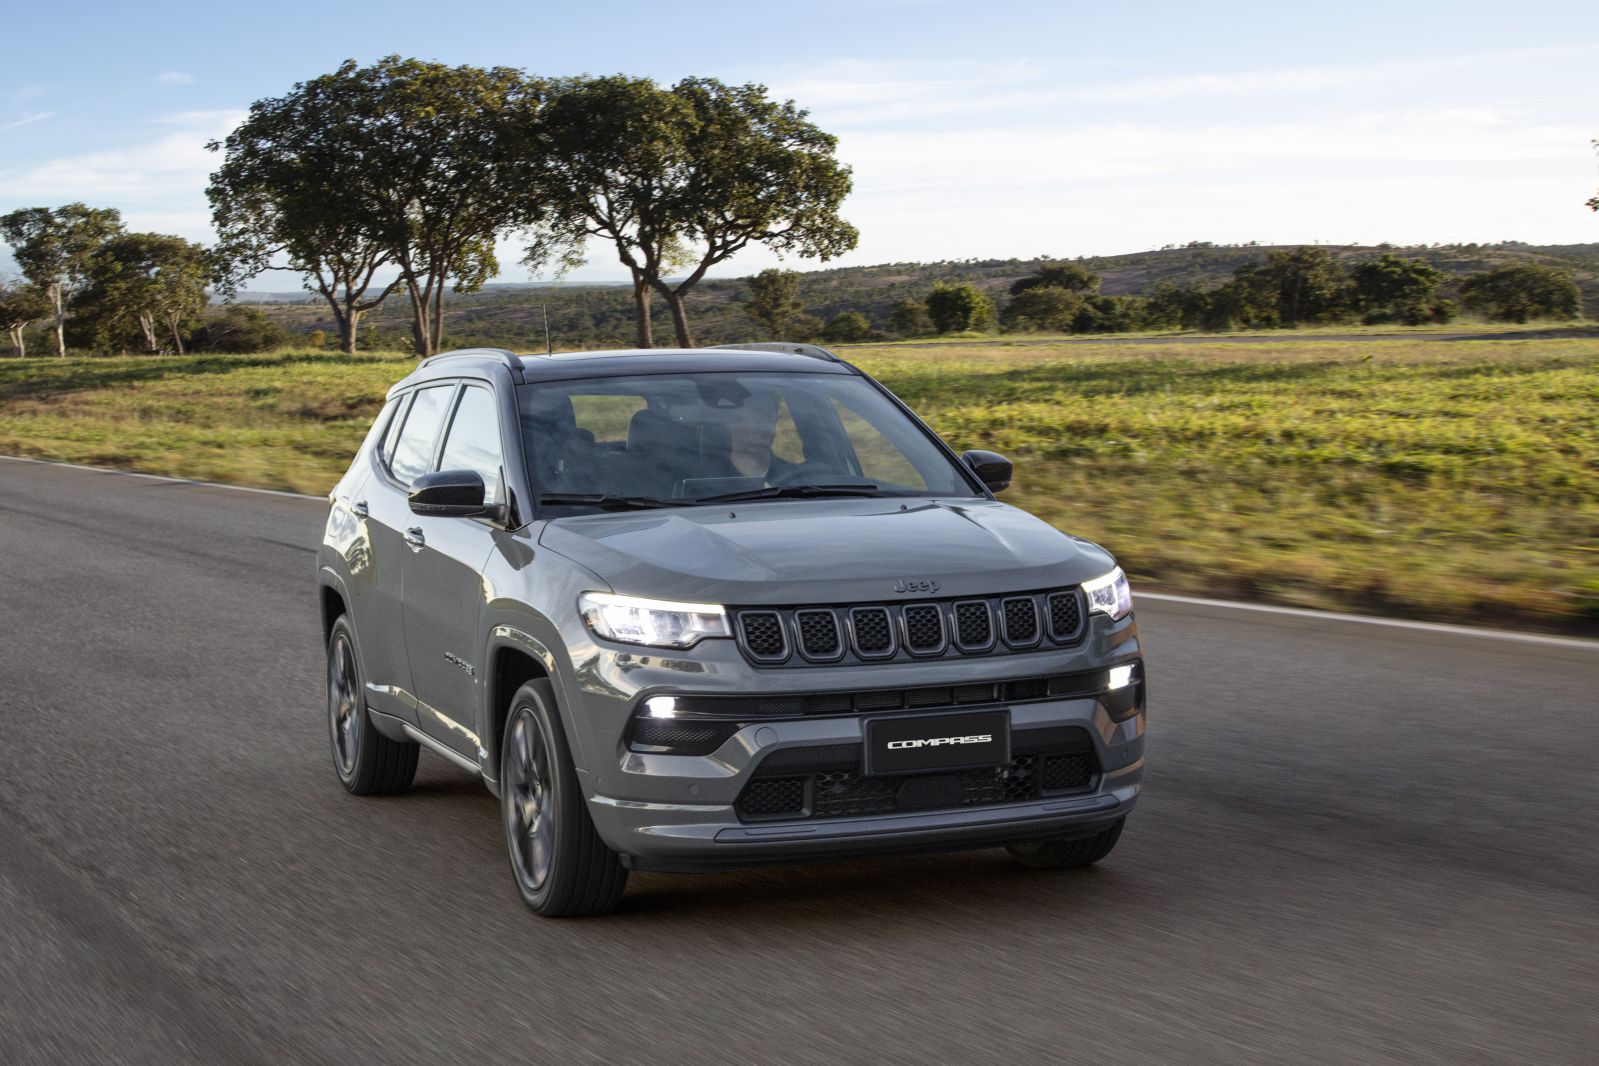 La marca Jeep® presenta la “Serie-S” para sus modelos Compass y Renegade